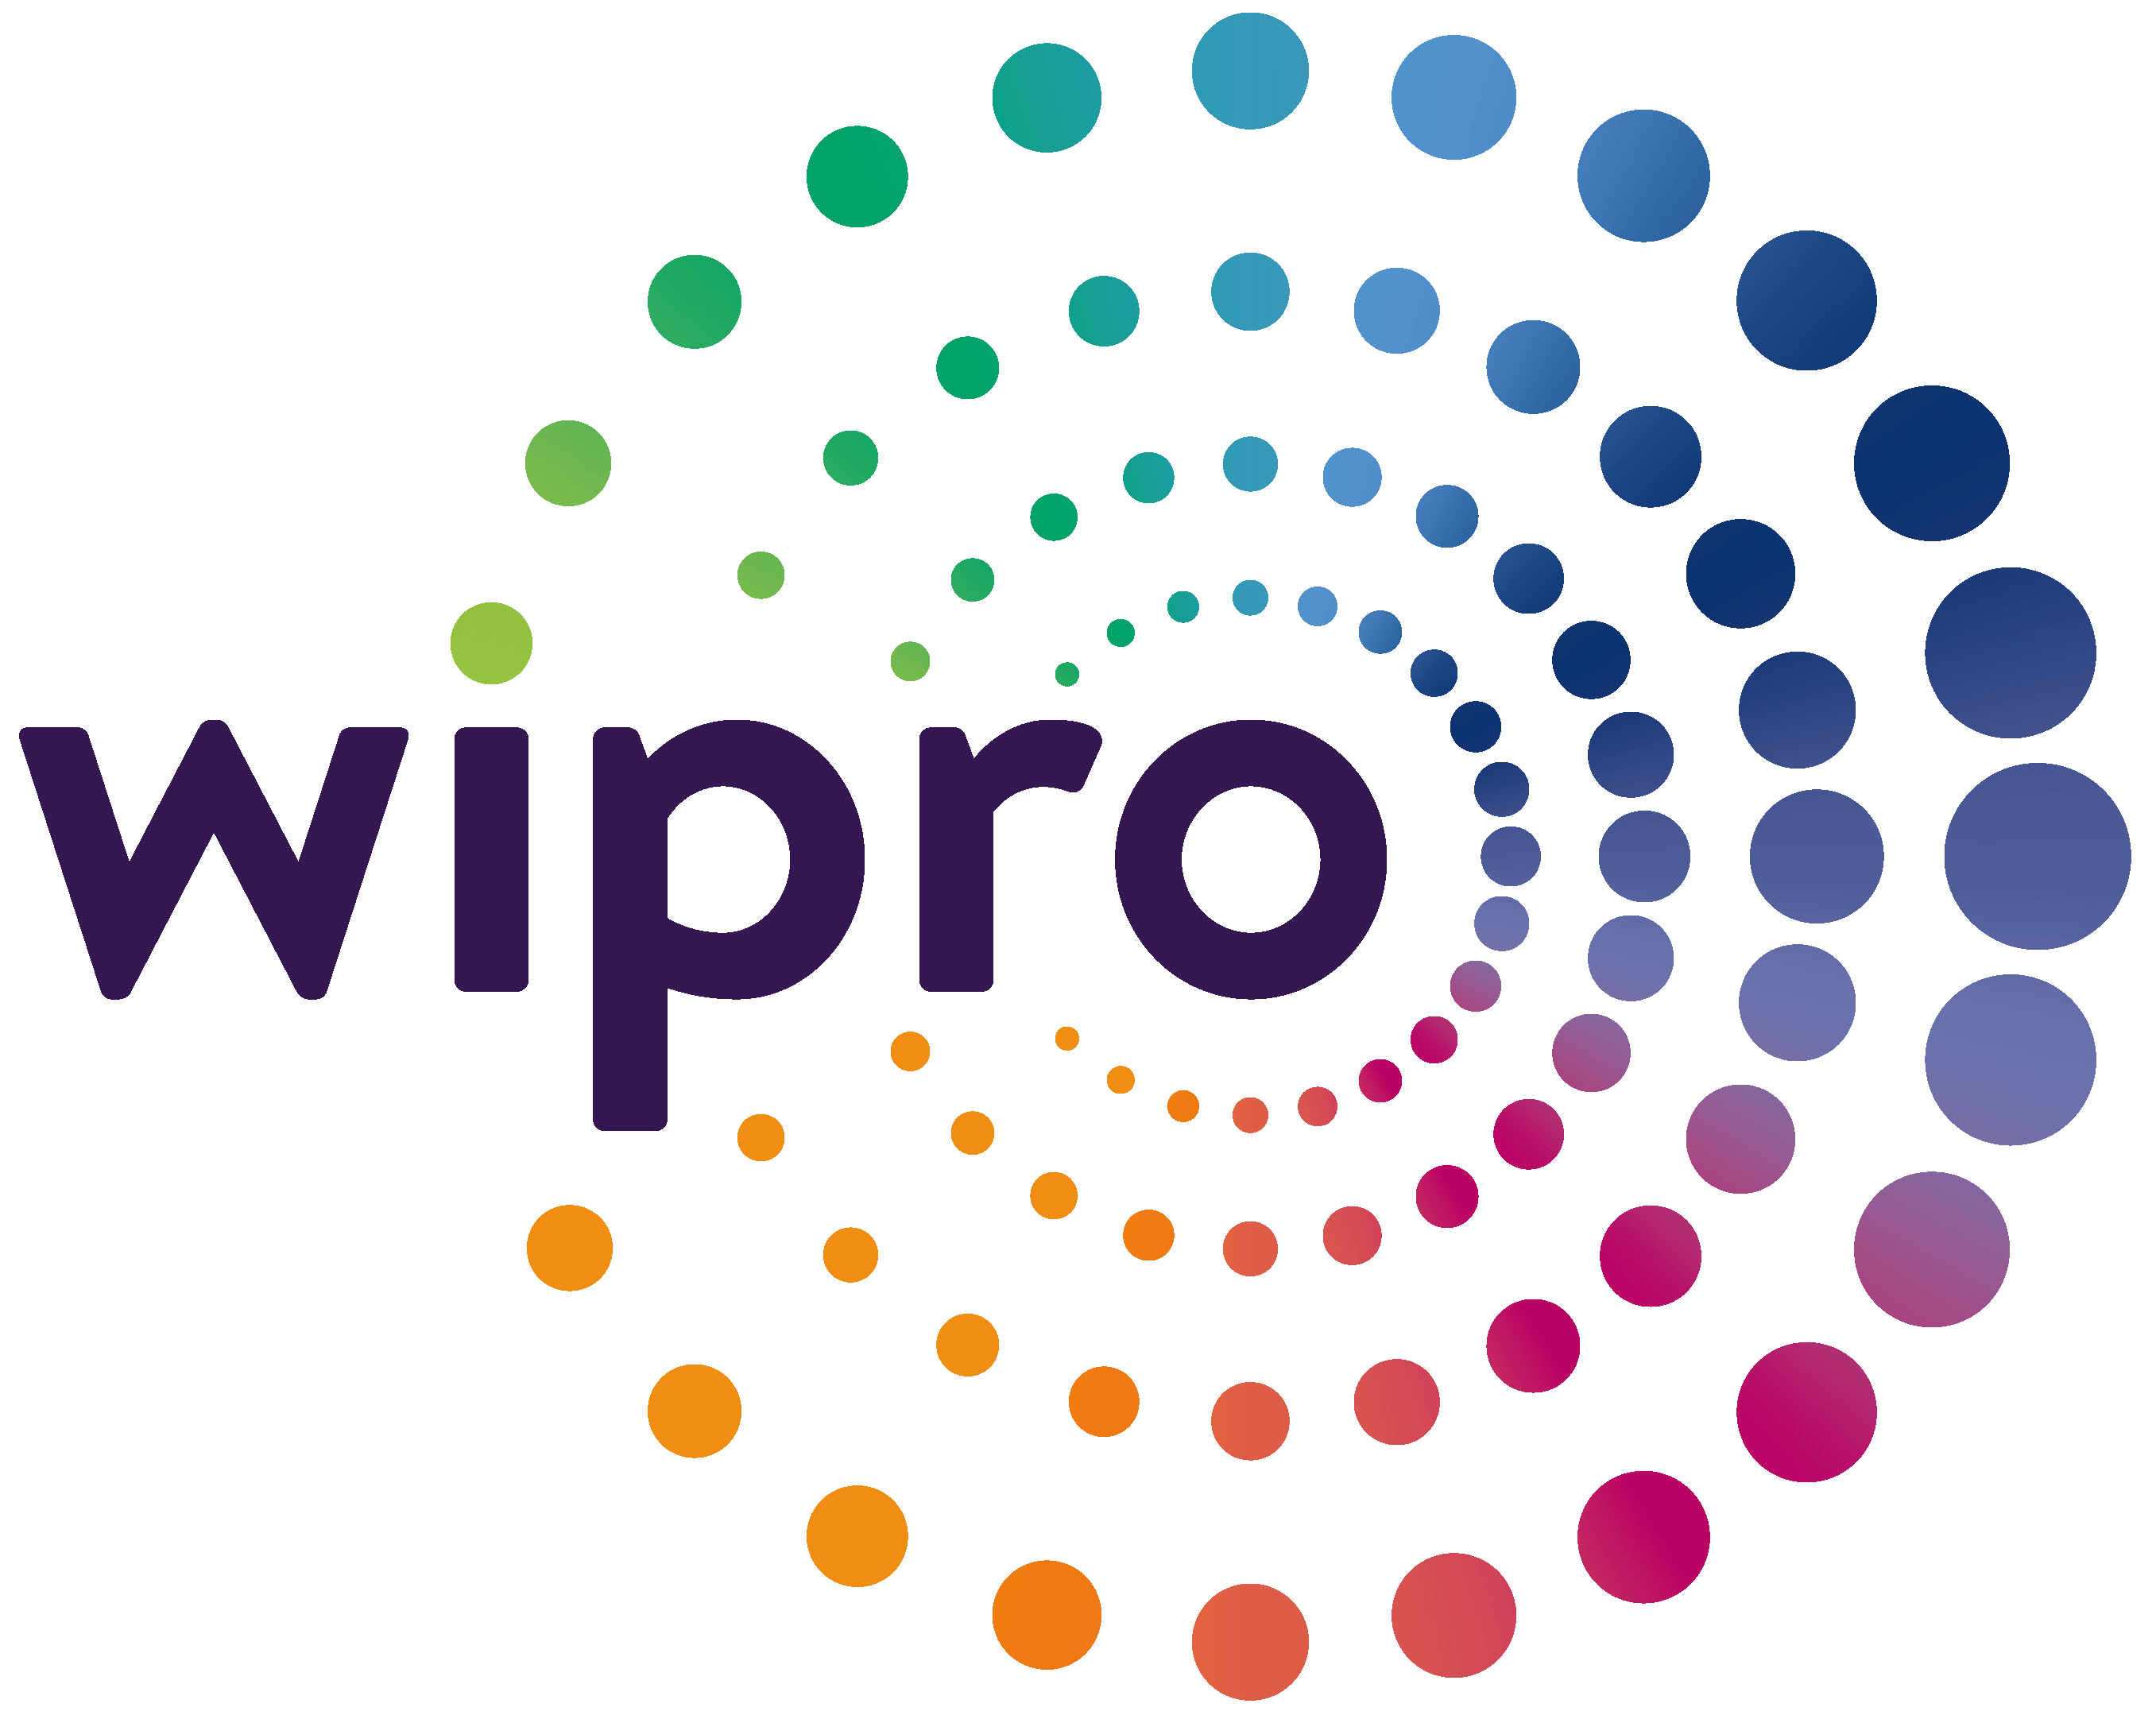 Wipro-logo